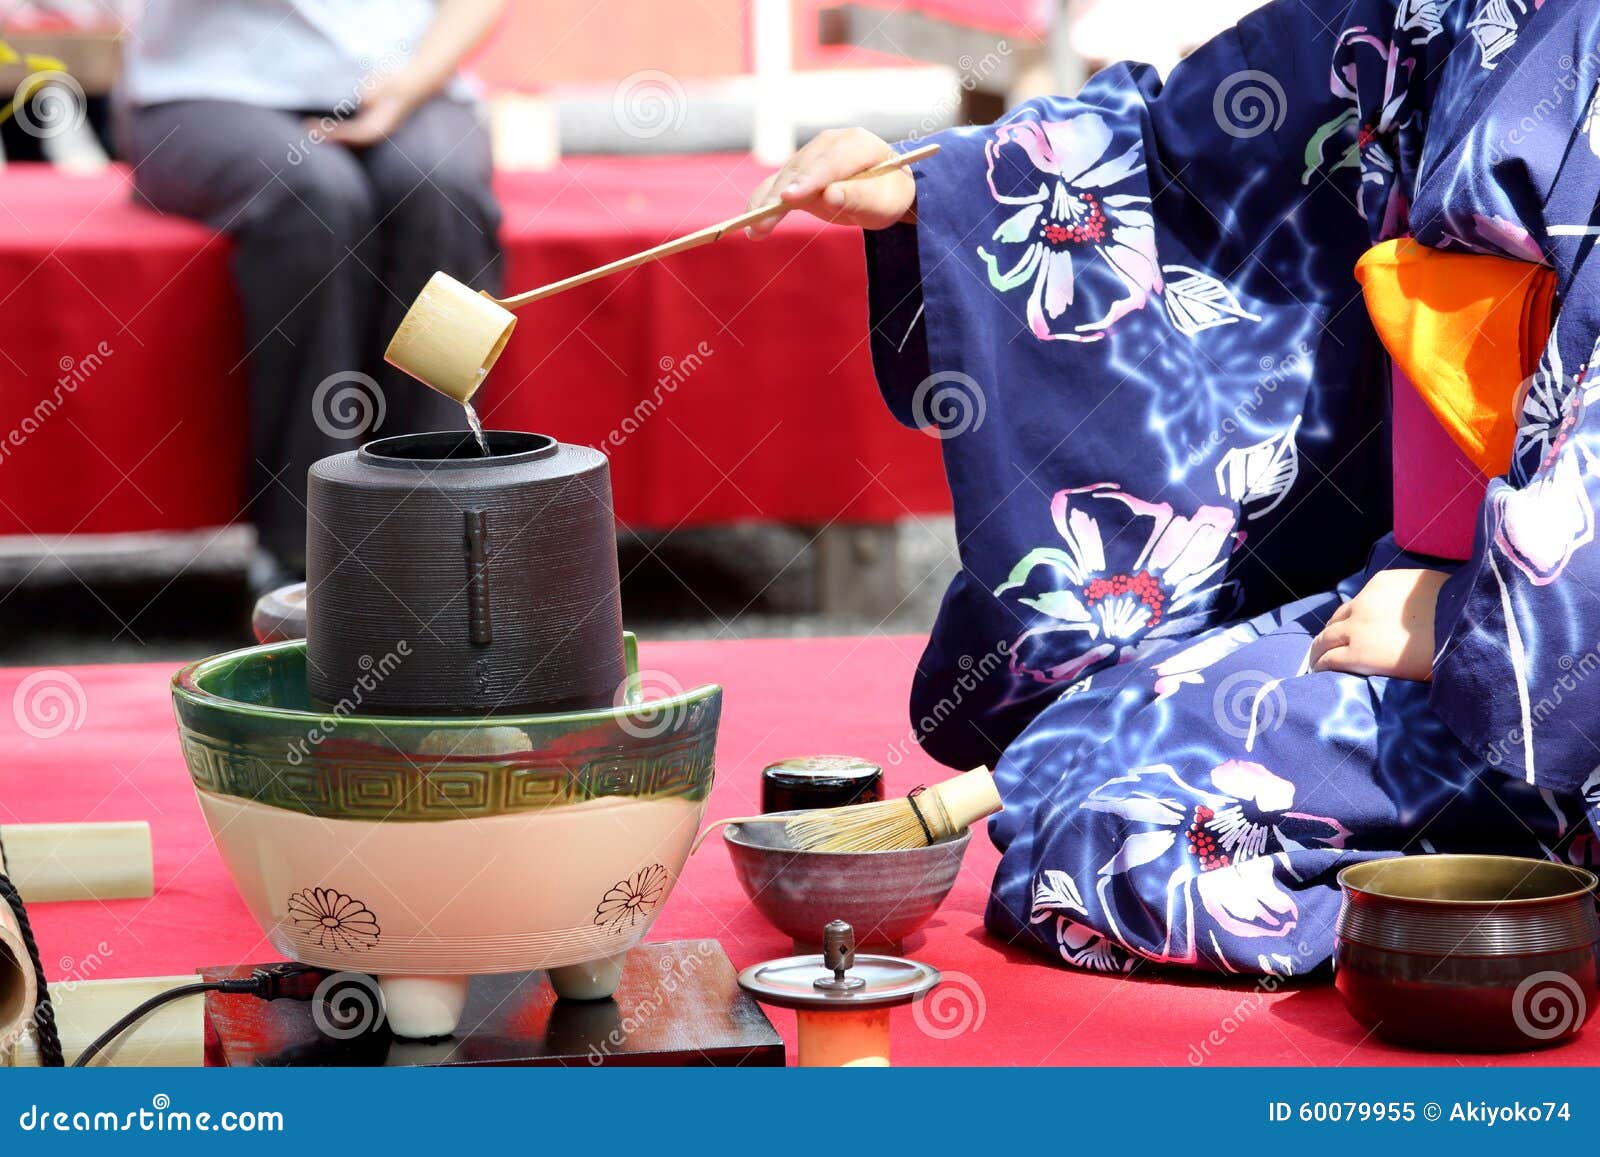 Чайная церемония в японском саду. Чайная церемония в Японии. Китайская чайная церемония. Японский сад чайной церемонии. Церемония чаепития в Японии.